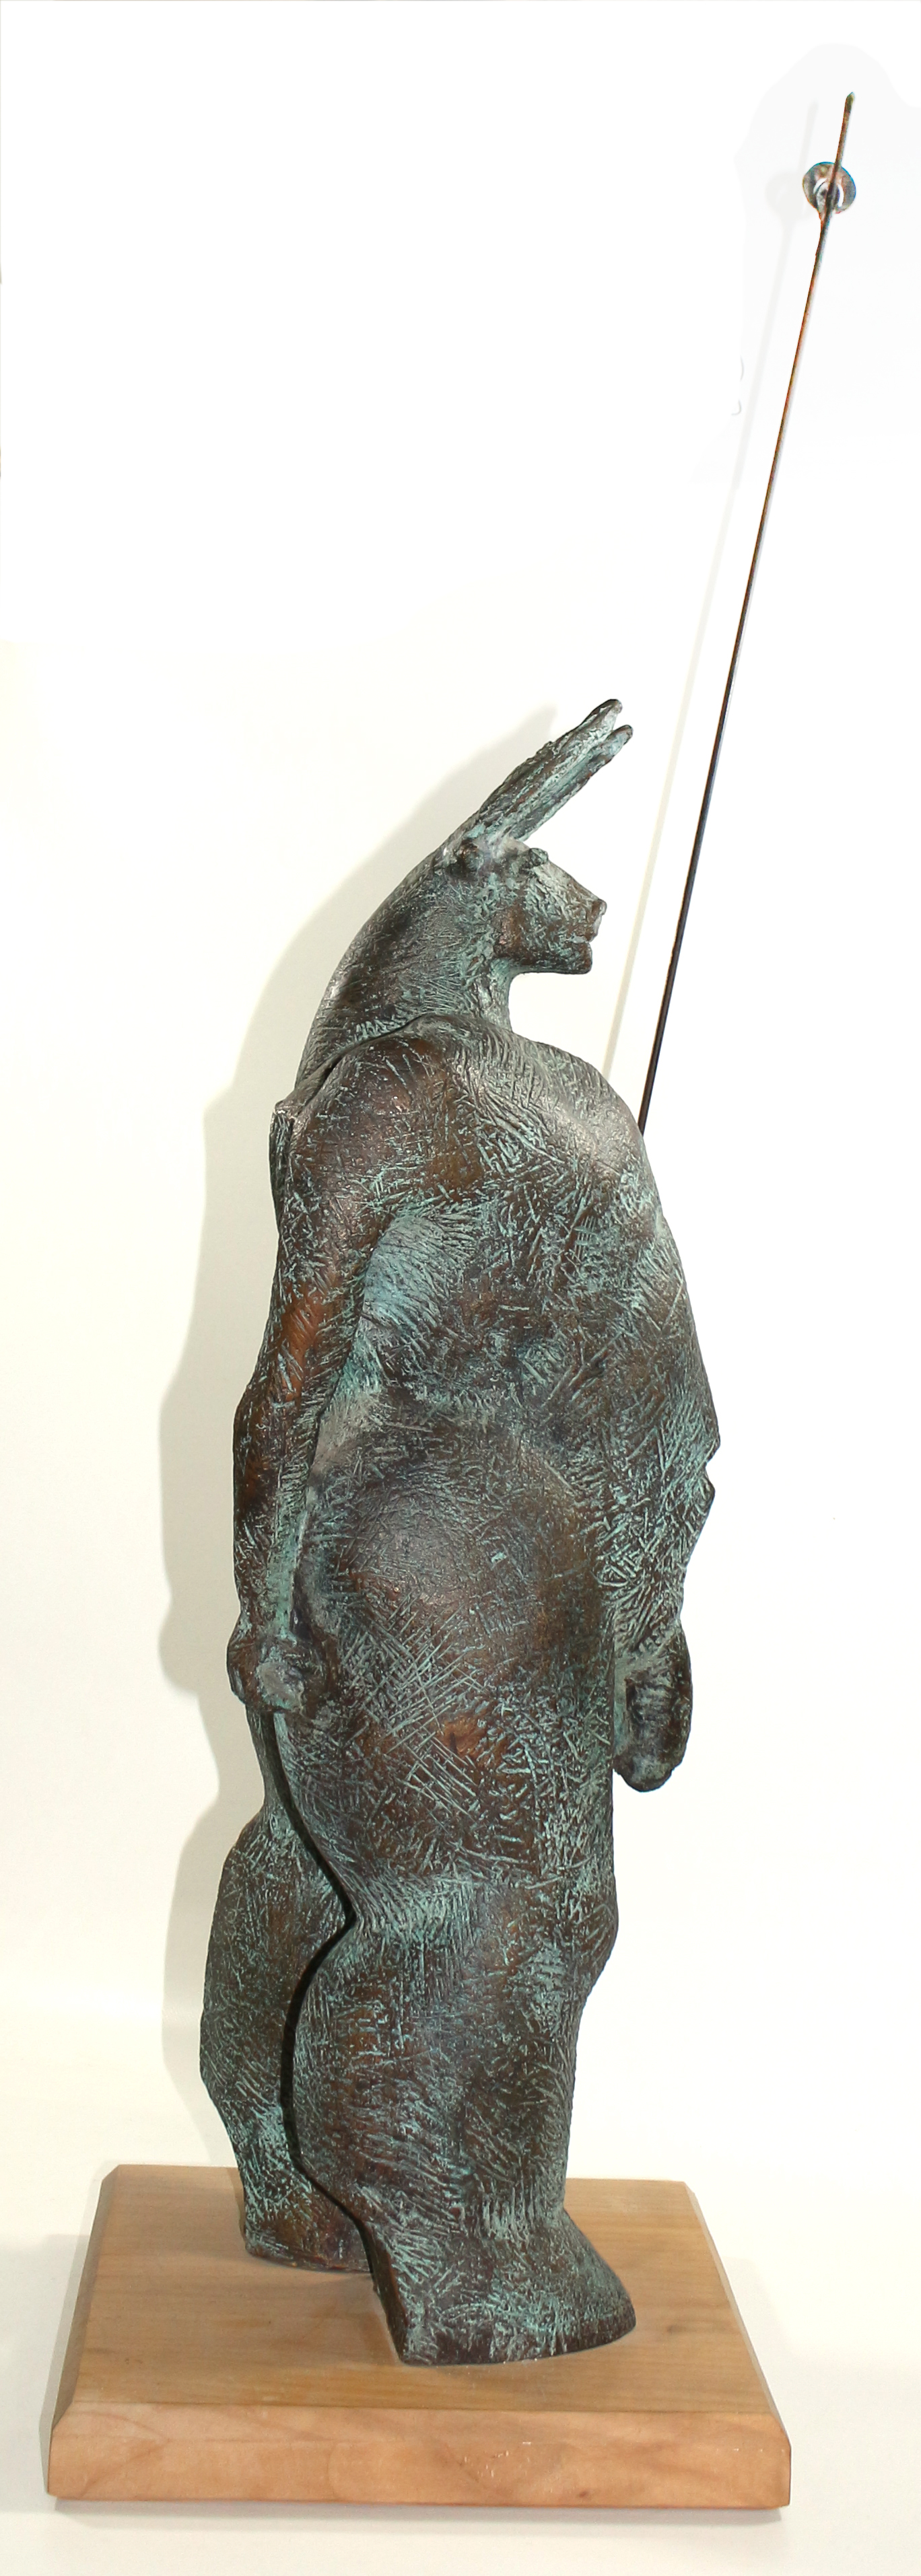 Minotaurus Bronzeskulptur | Bild Nr.3